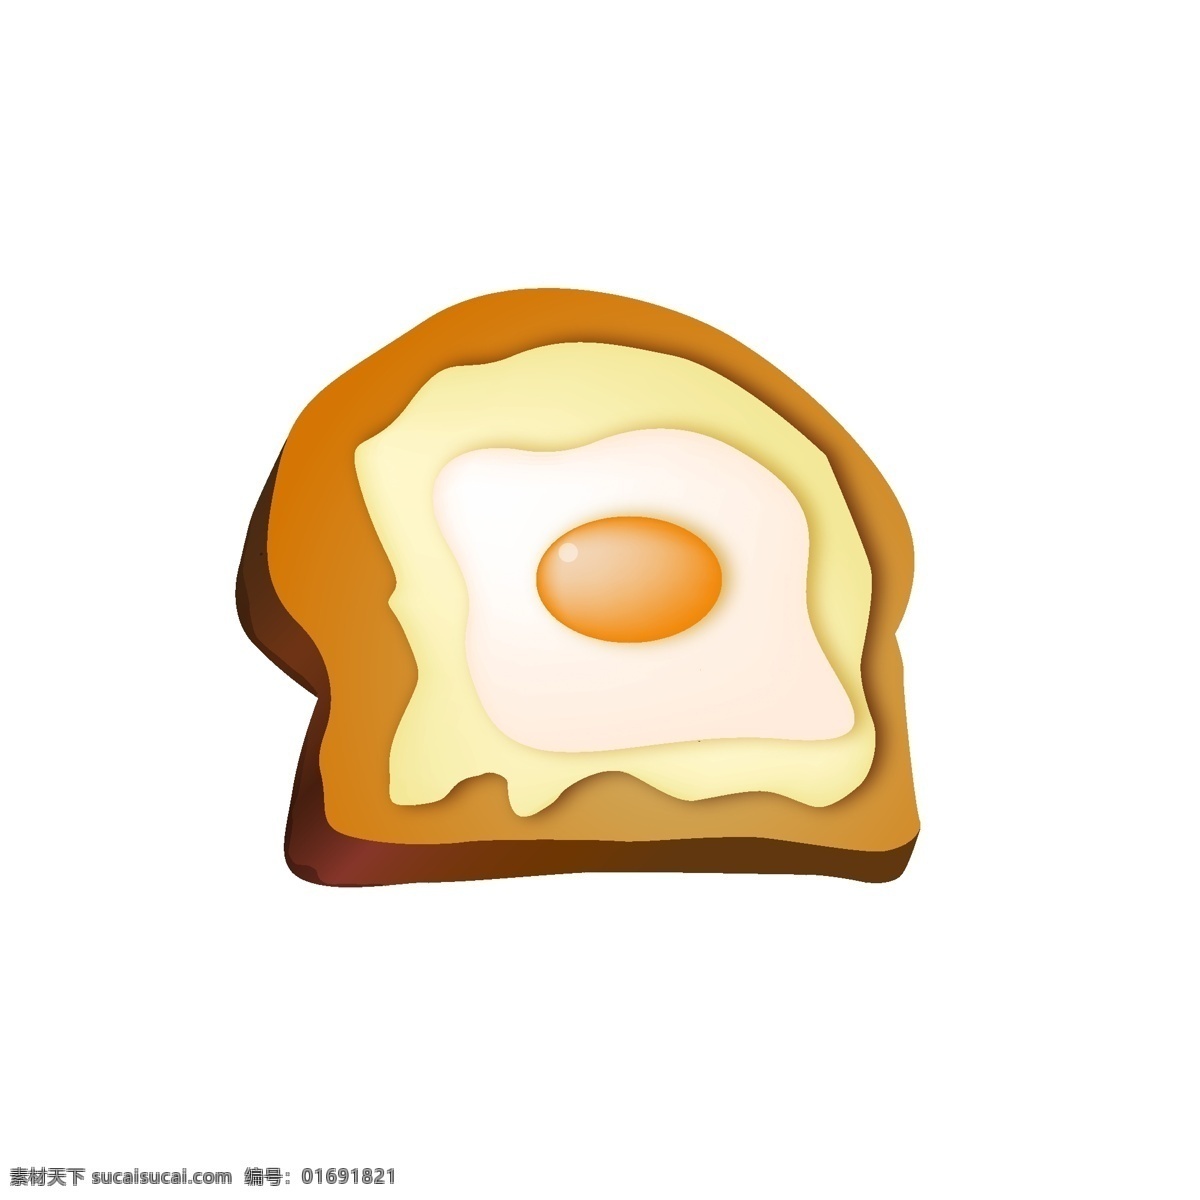 三明治 芝士 夹心 鸡蛋 营养早餐 面包